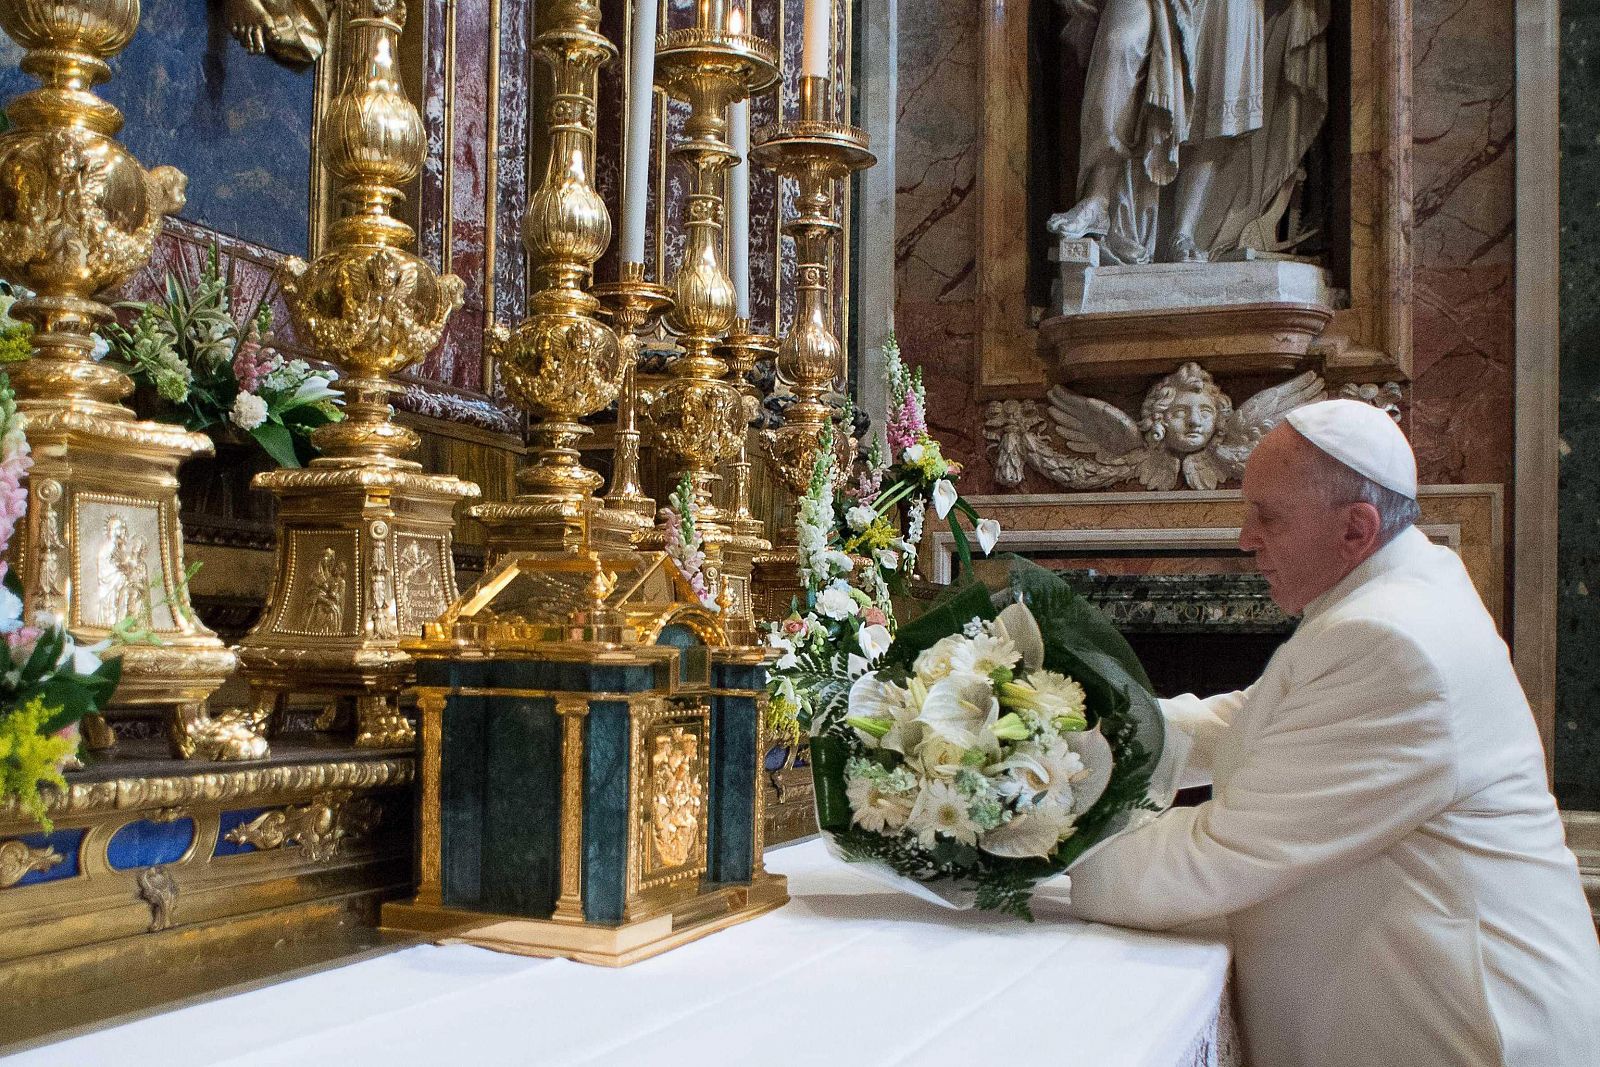 El papa Francisco durante su ofrenda floral en una visita a la Basílica de santa María la Mayor en Roma.